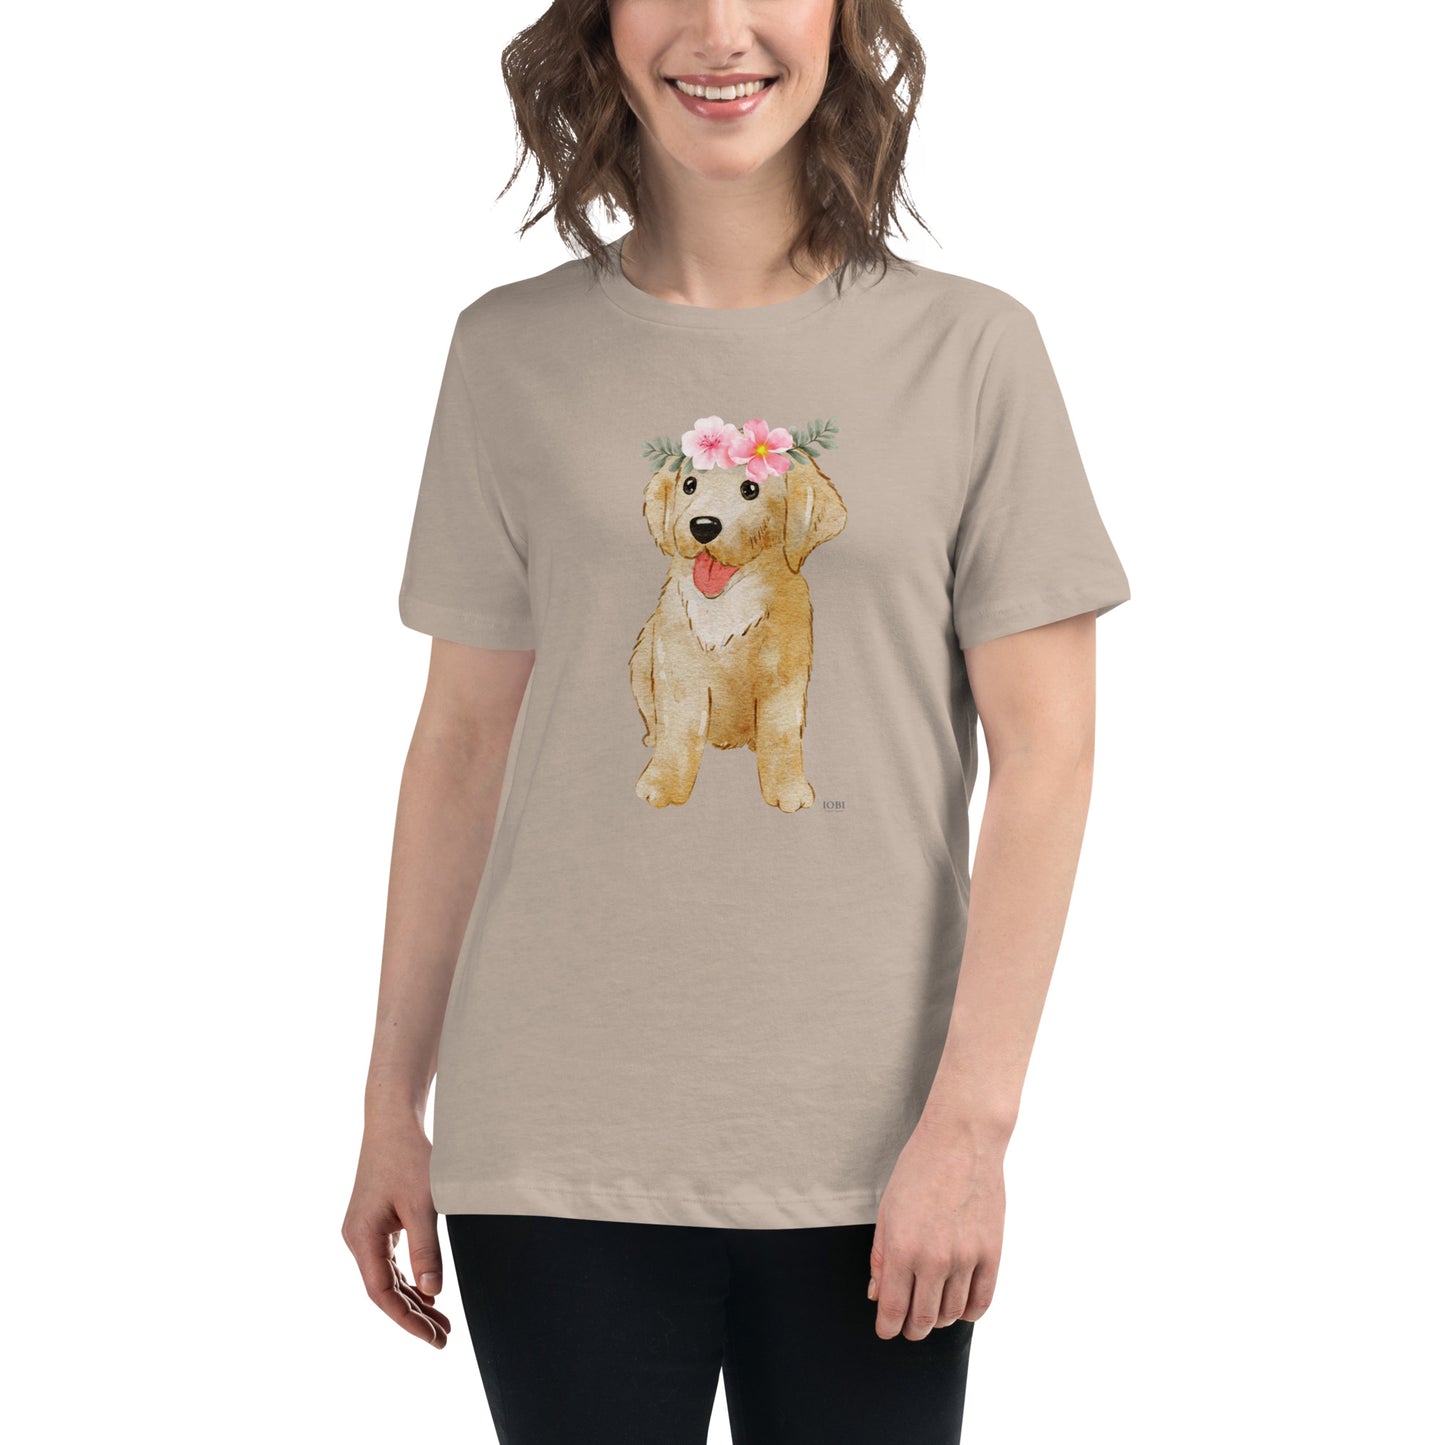 Women's Relaxed Soft & Smooth Premium Quality T-Shirt Labrador Puppy Dog Design by IOBI Original Apparel